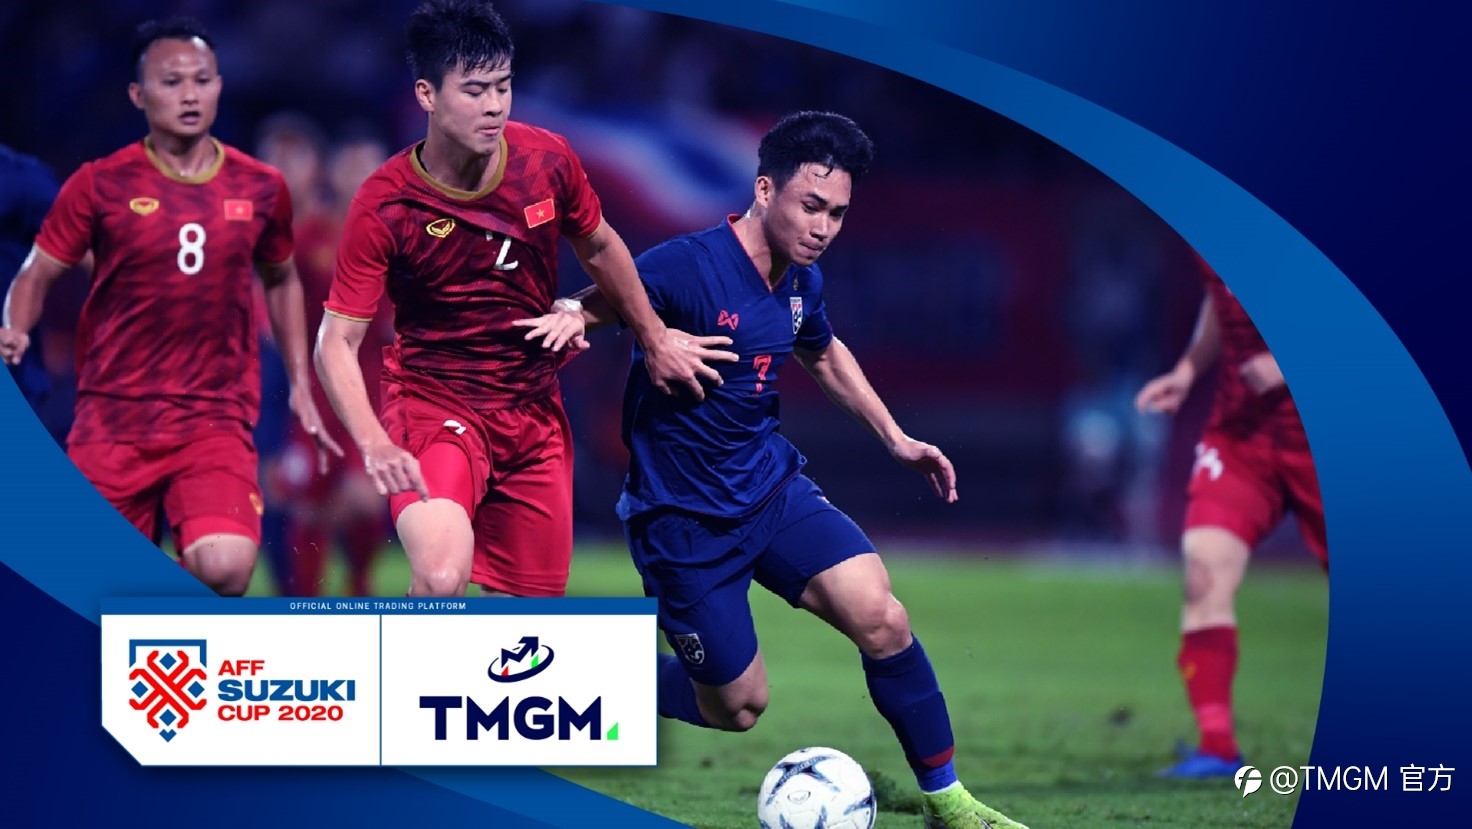 世界领先券商TMGM与重磅足球赛事AFF铃木杯锦标赛达成合作